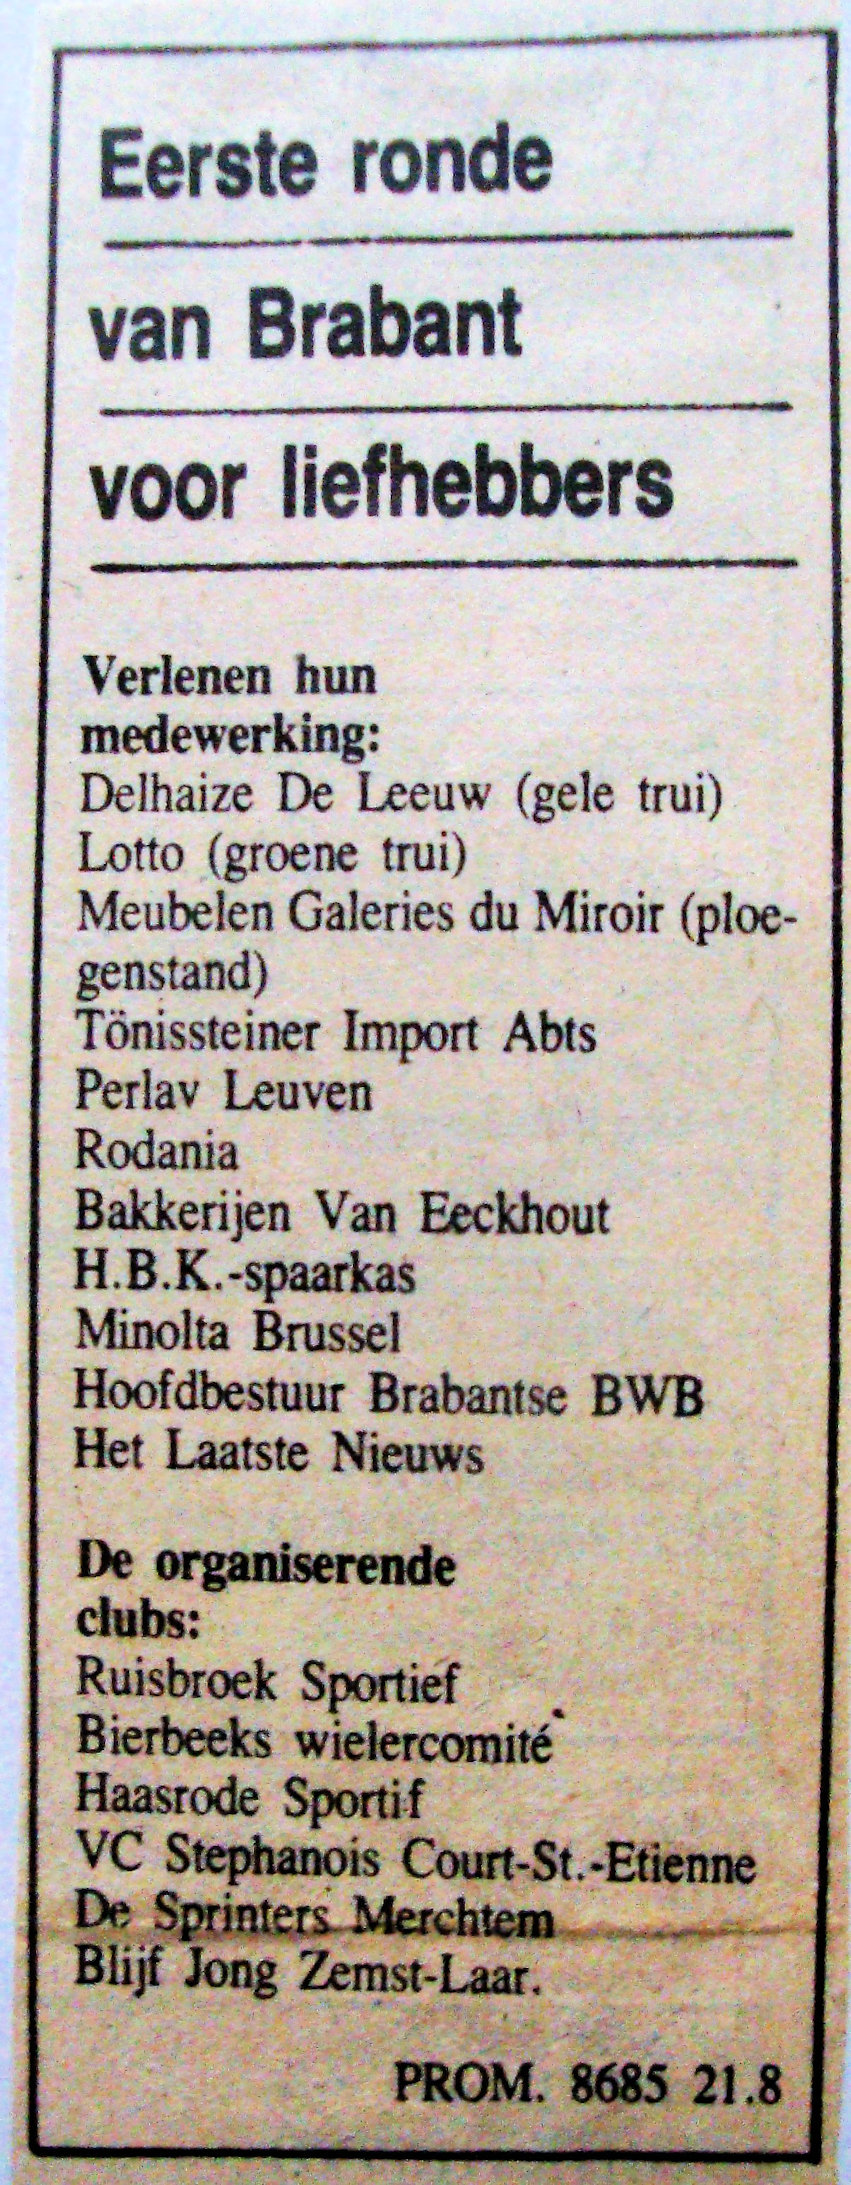 19810904-Eerste-ronde-van-Brabant-.JPG - 645,98 kB